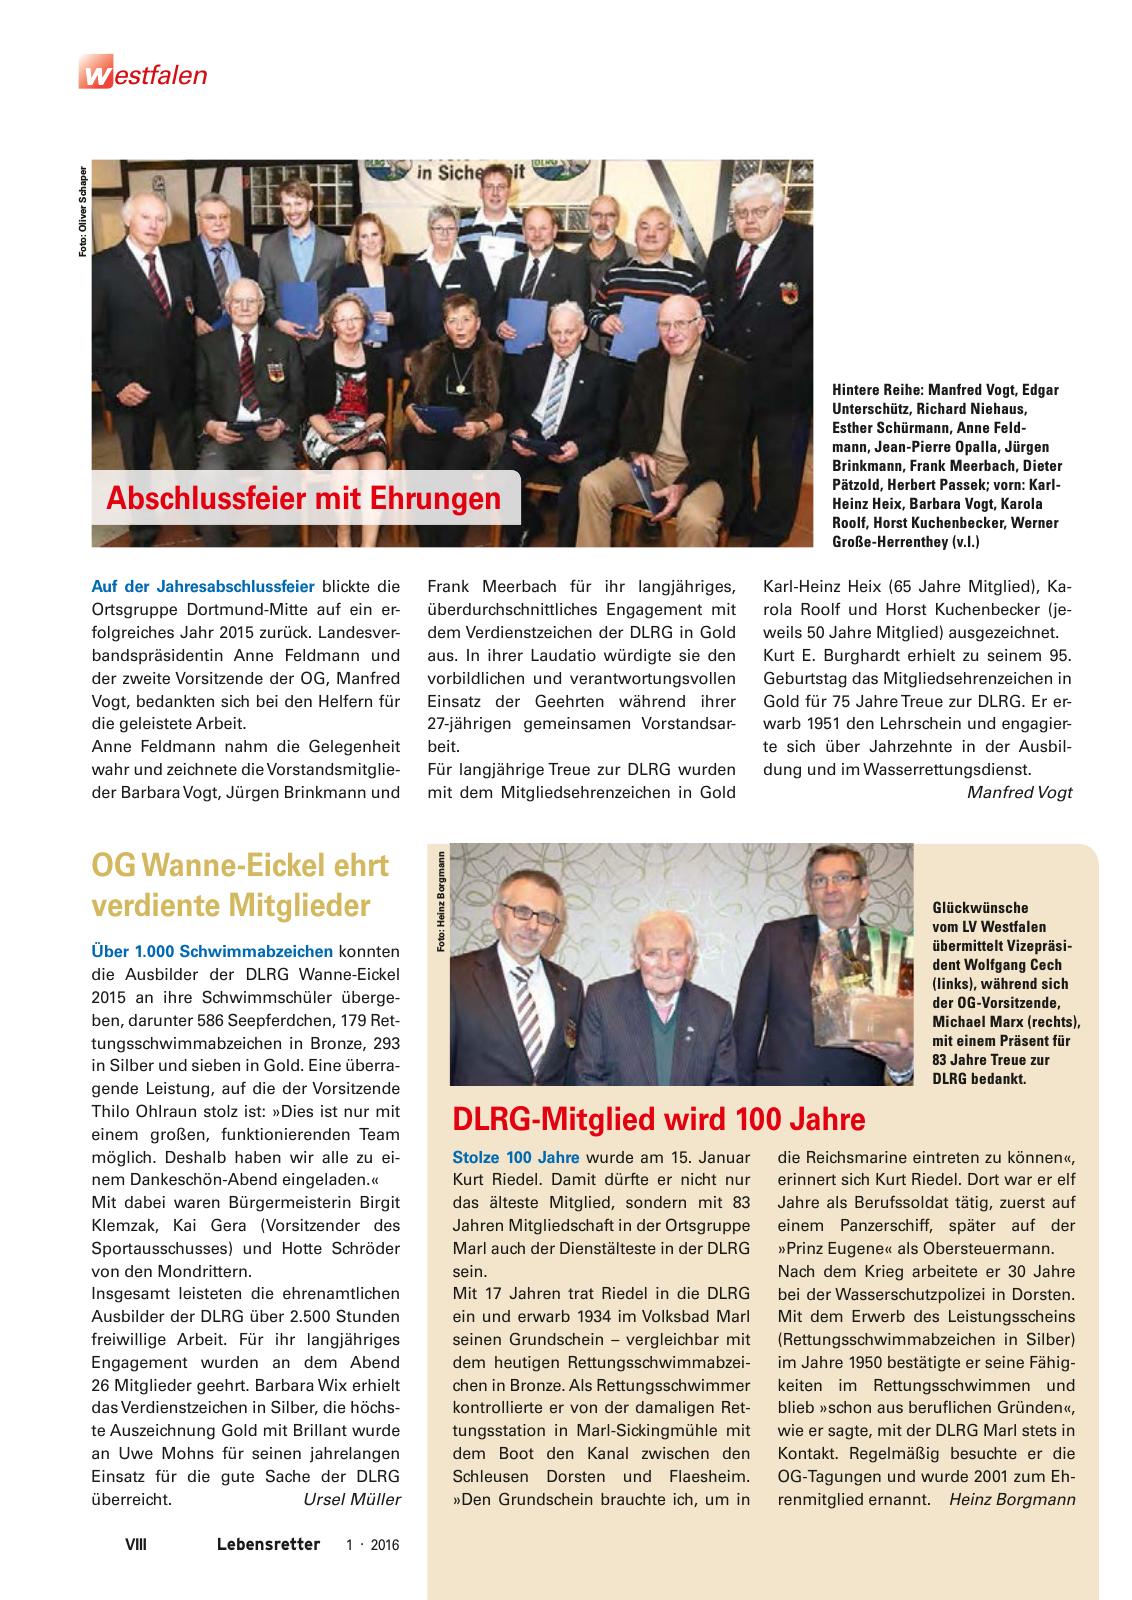 Vorschau Lebensretter 1/2016 - Regionalausgabe Westfalen Seite 10